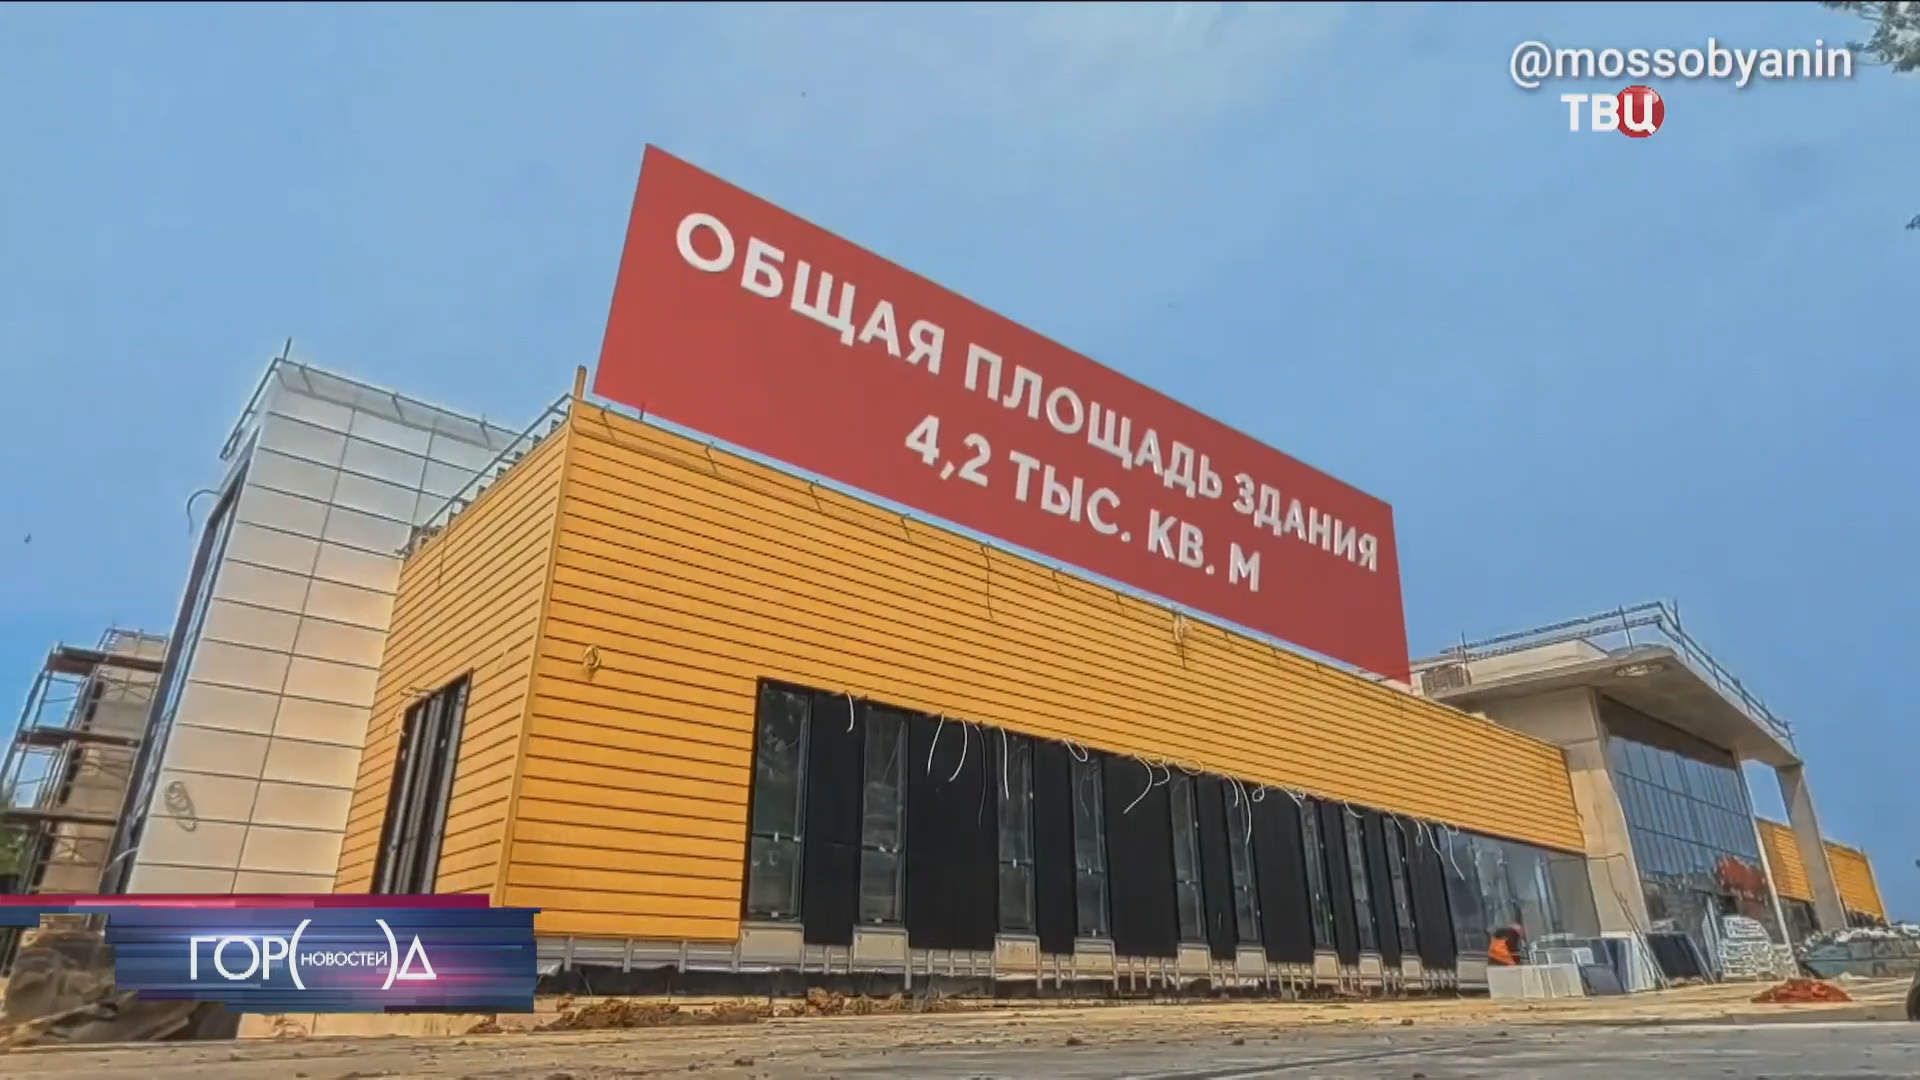 Собянин сообщил о скором открытии нового спорткомплекса на юге Москвы / Город новостей на ТВЦ